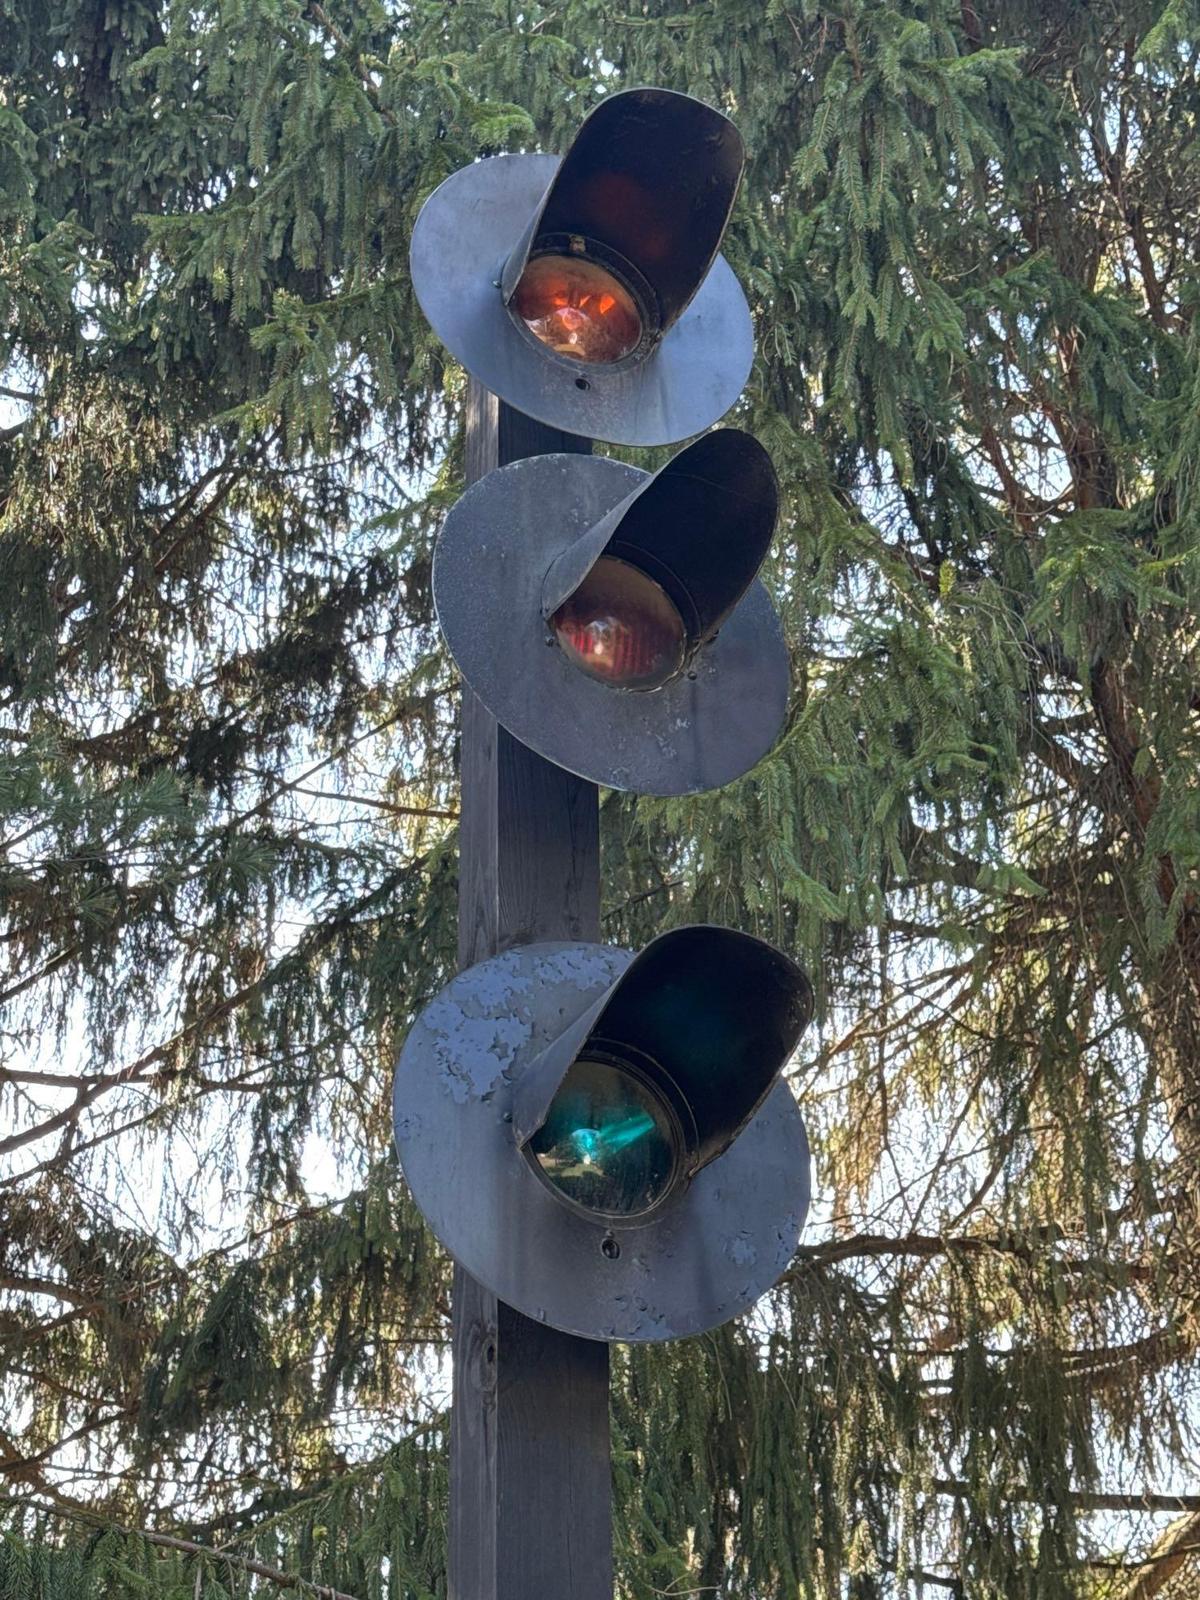 crossing lights traffic lights